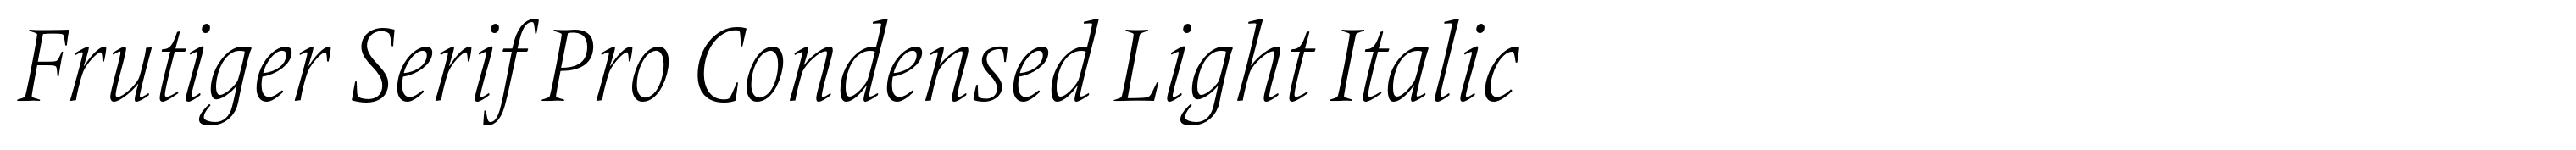 Frutiger Serif Pro Condensed Light Italic